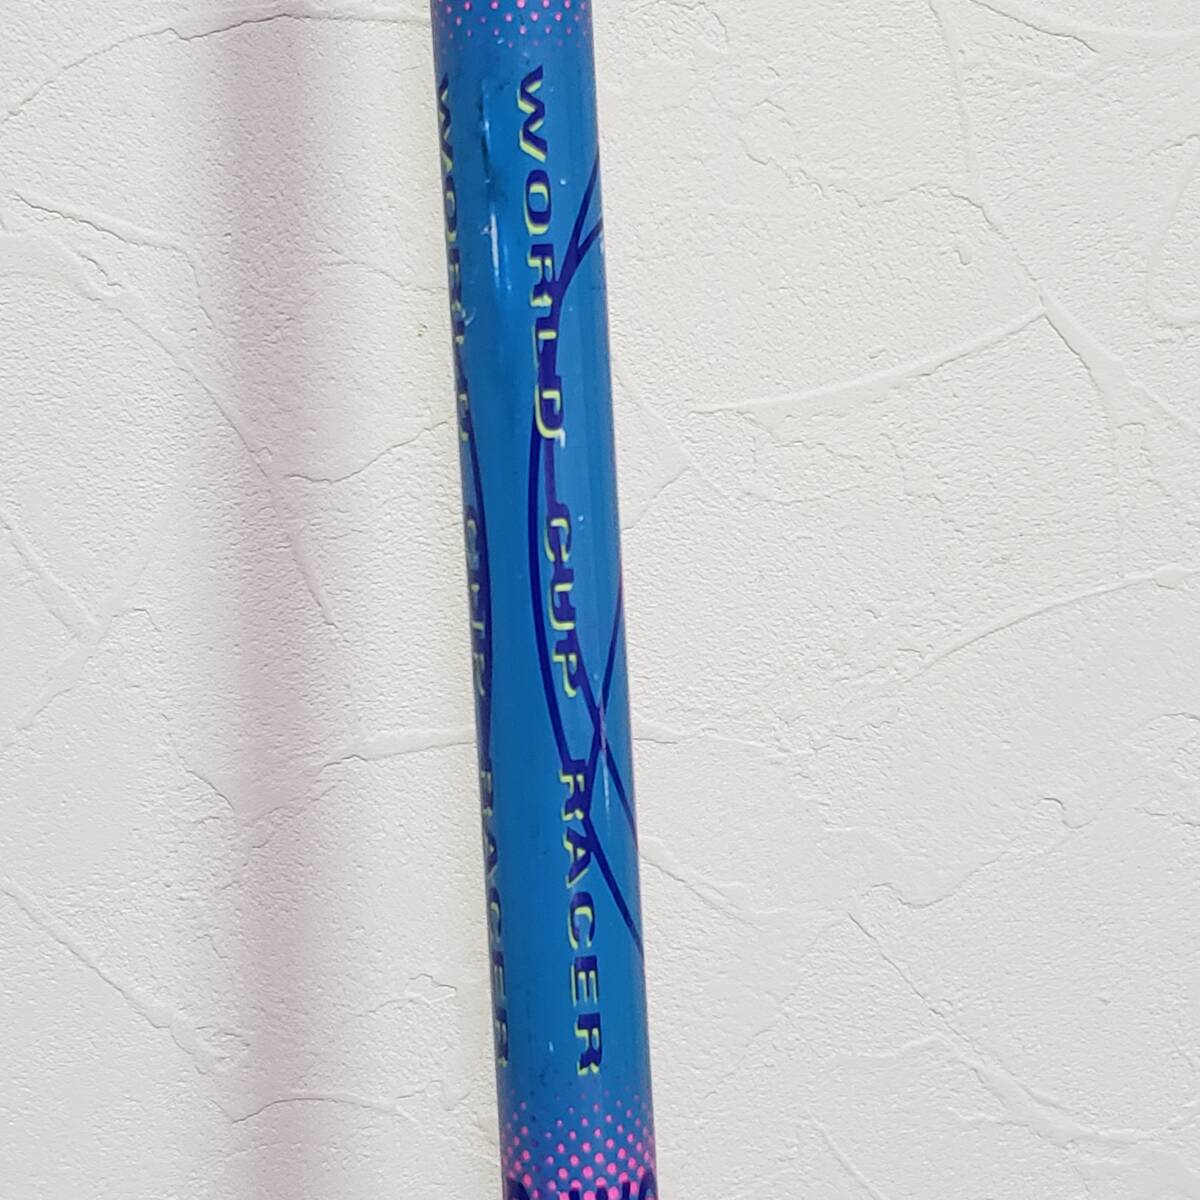 YS01EE сделано в Японии SCOTT Scott лыжи stock оттенок голубого длина 118cm ранг WORLD CUP RACER INTERNATIONAL с логотипом лыжи winter спорт 